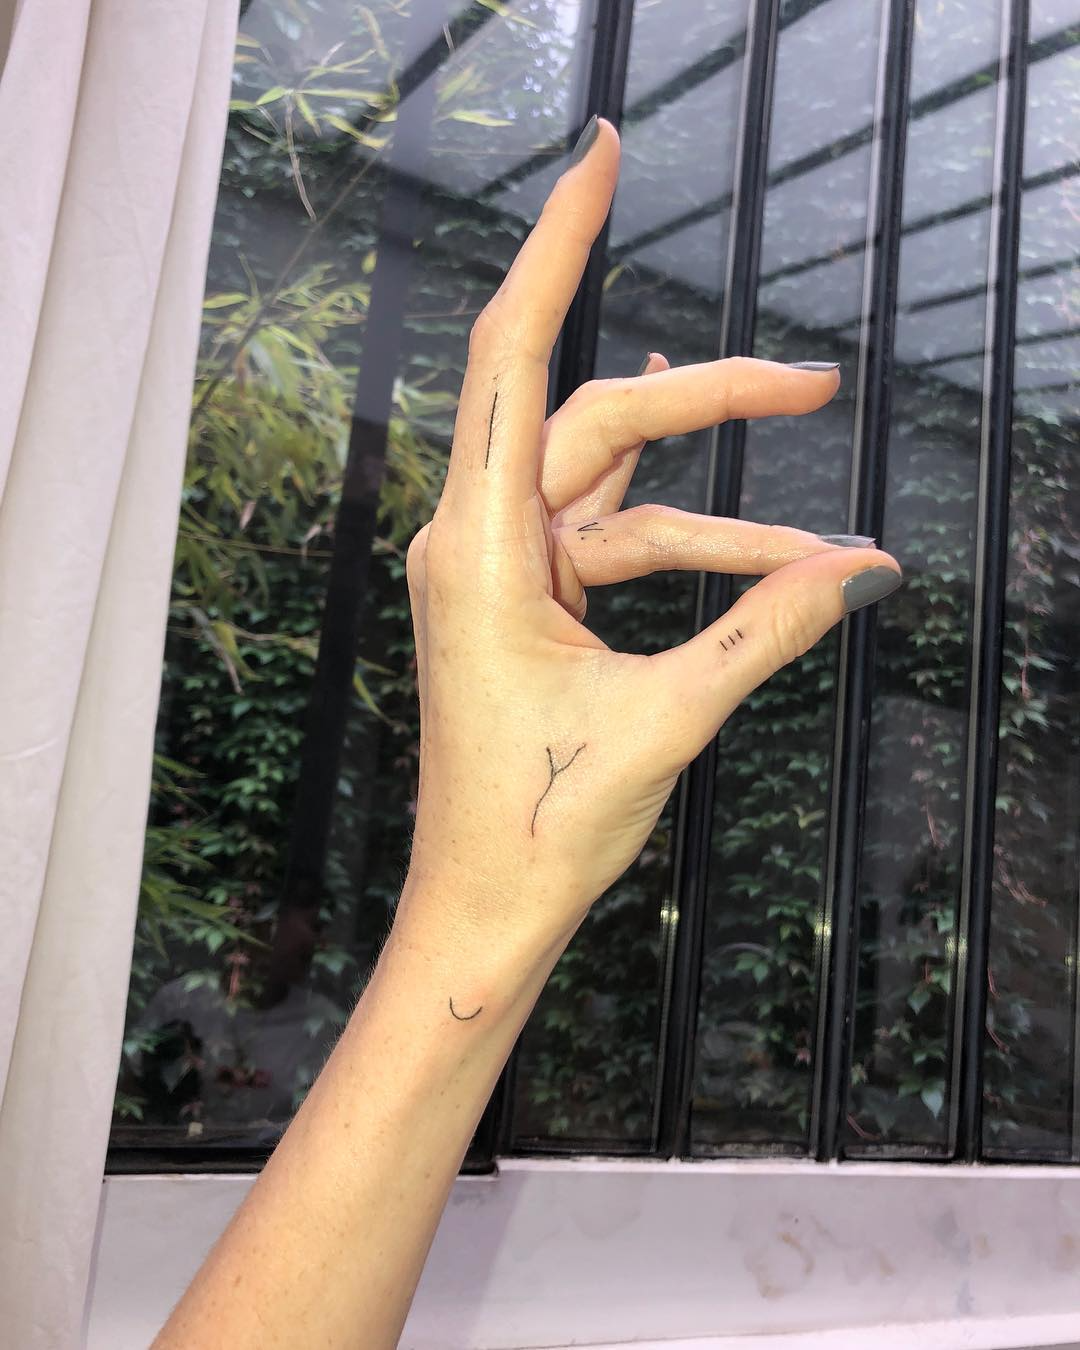 Рукописный текст: что особенного в хендпоук-тату — жанре, который любят Рианна и Анджелина Джоли (фото 6)